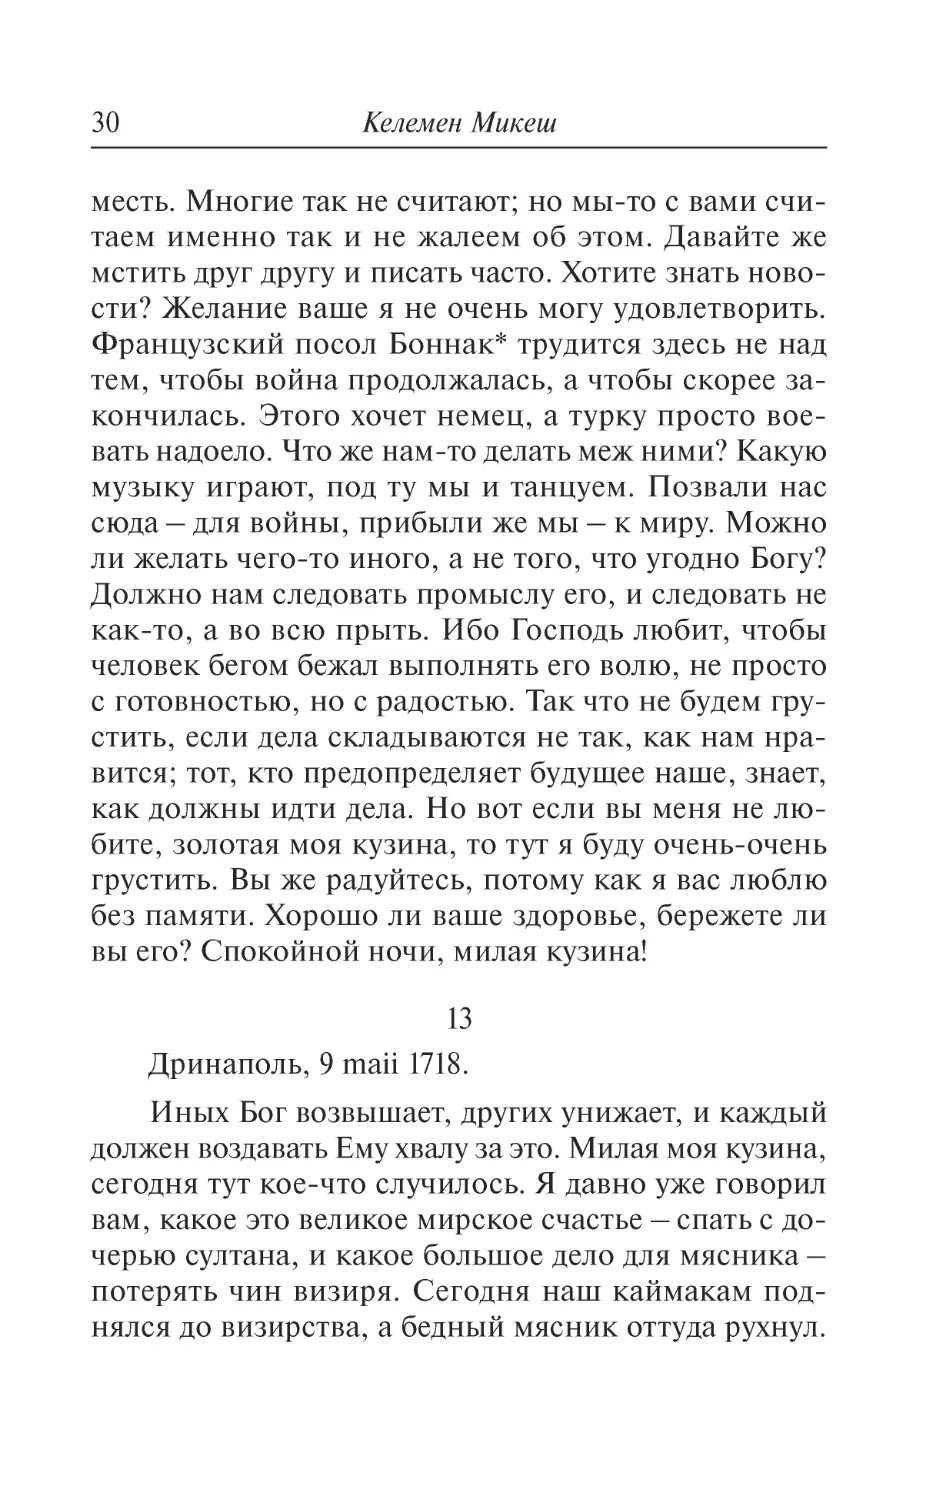 13. Дринаполь, 9 maii 1718